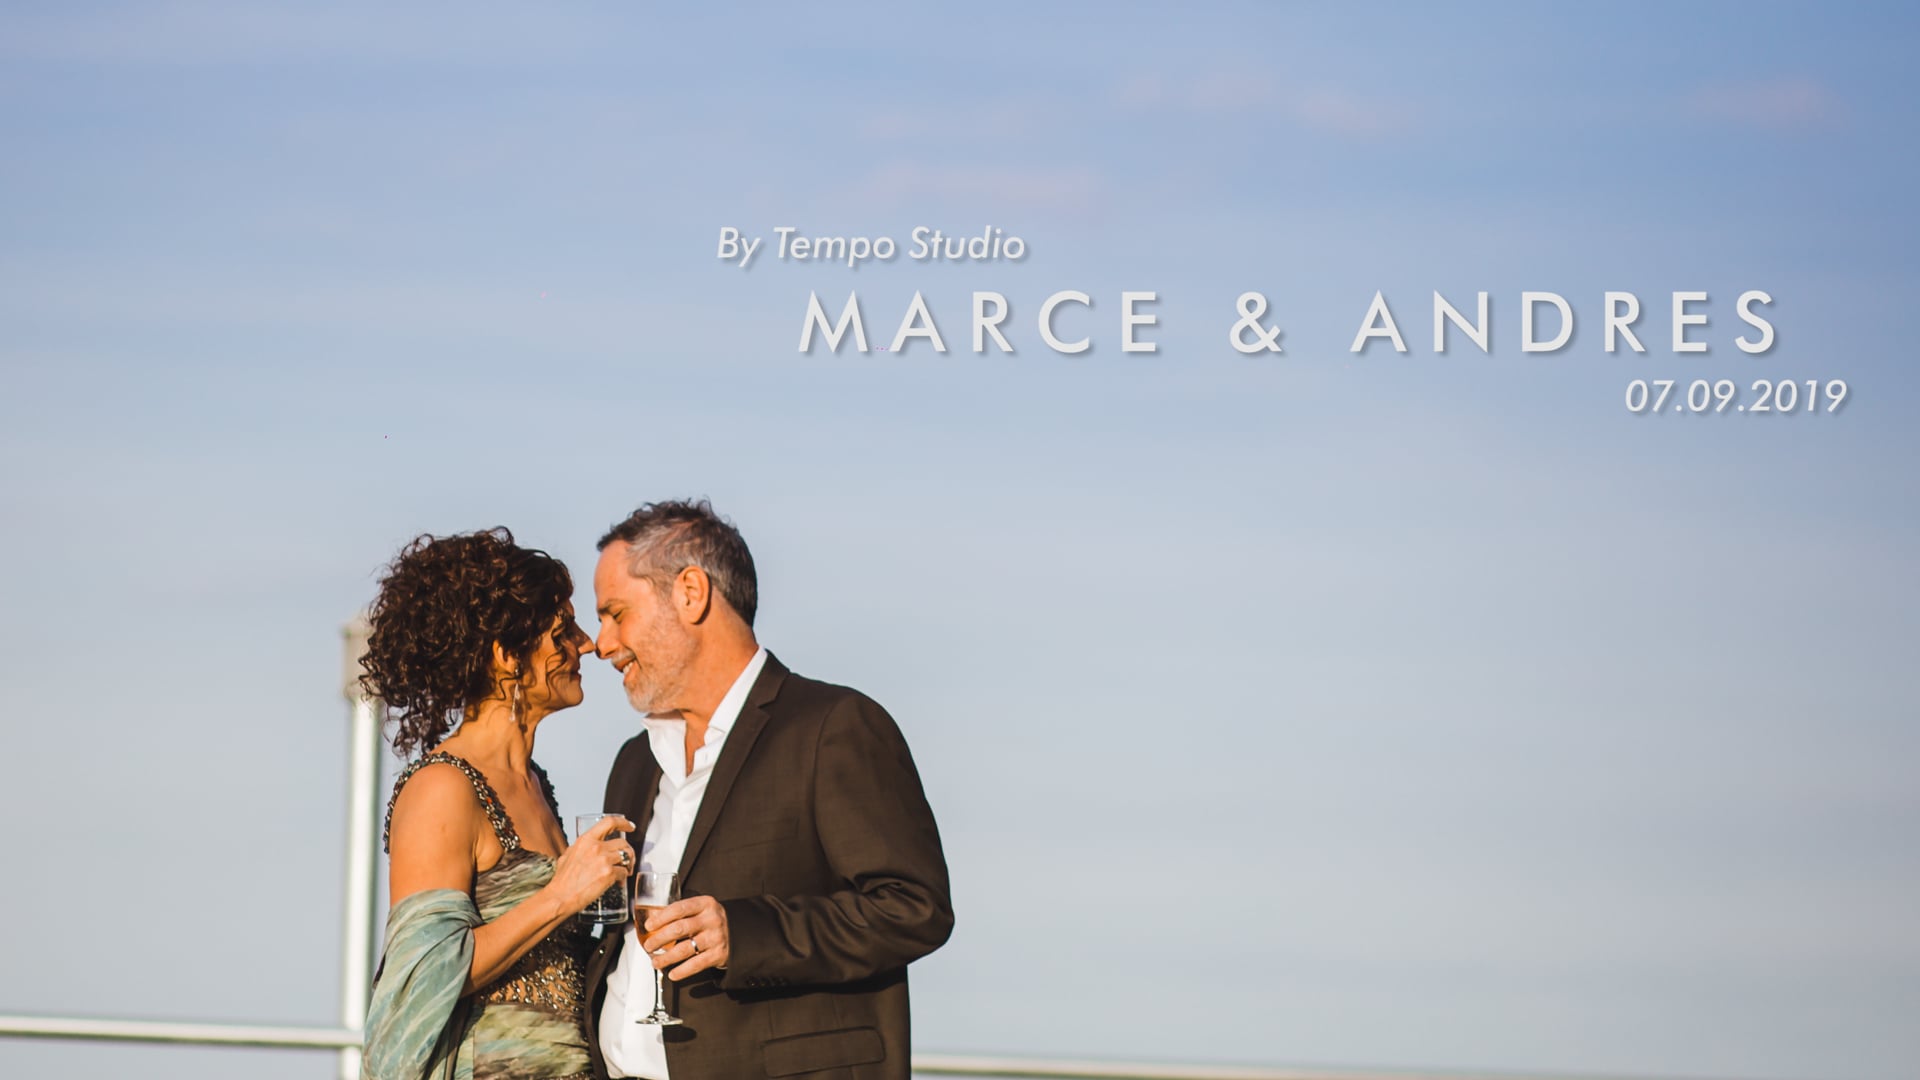 Marce & Andrés | Resumen completo